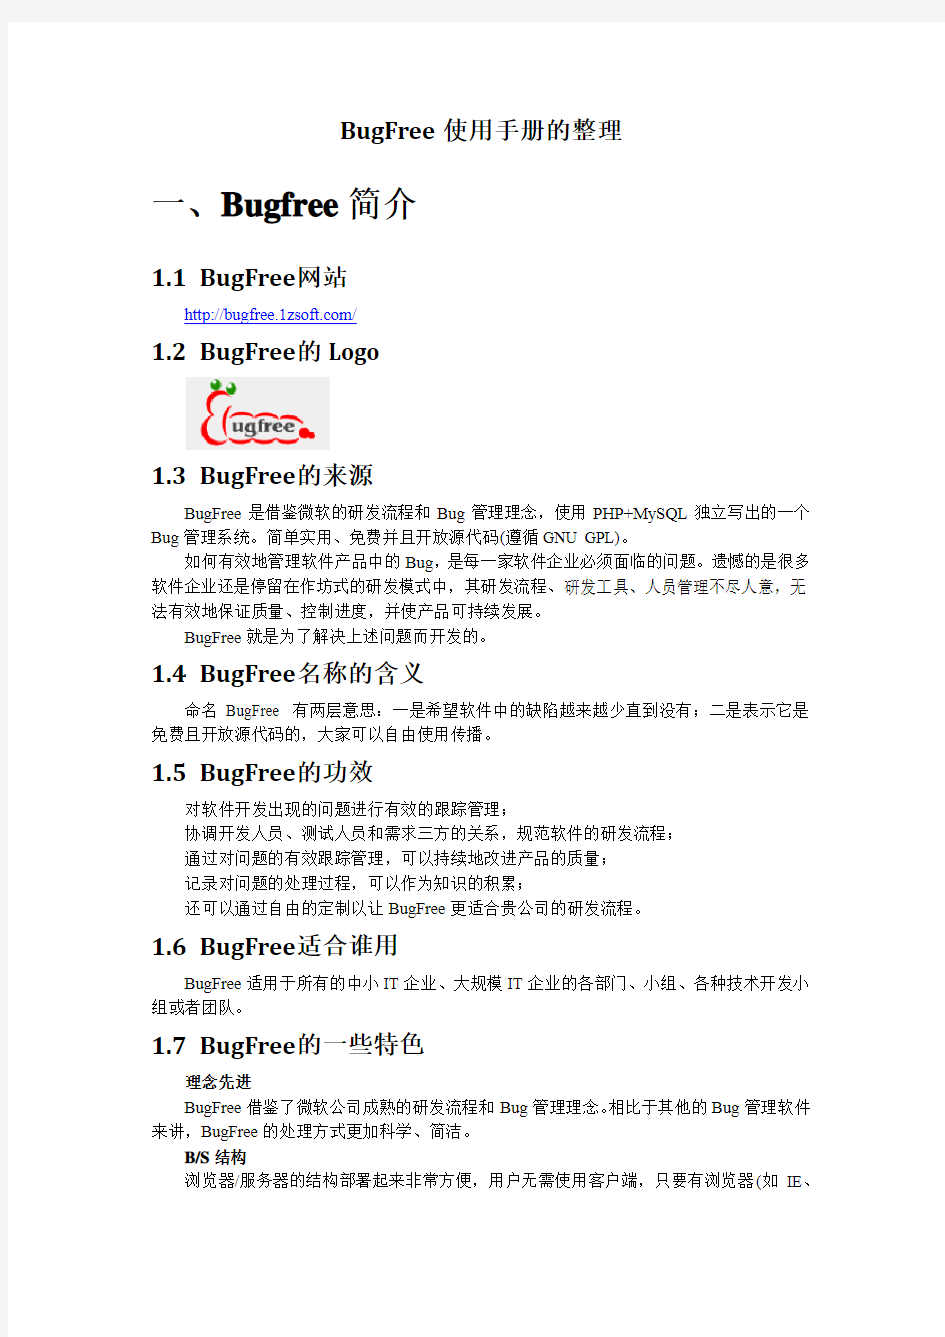 2.BugFree使用手册的整理2012-5-21